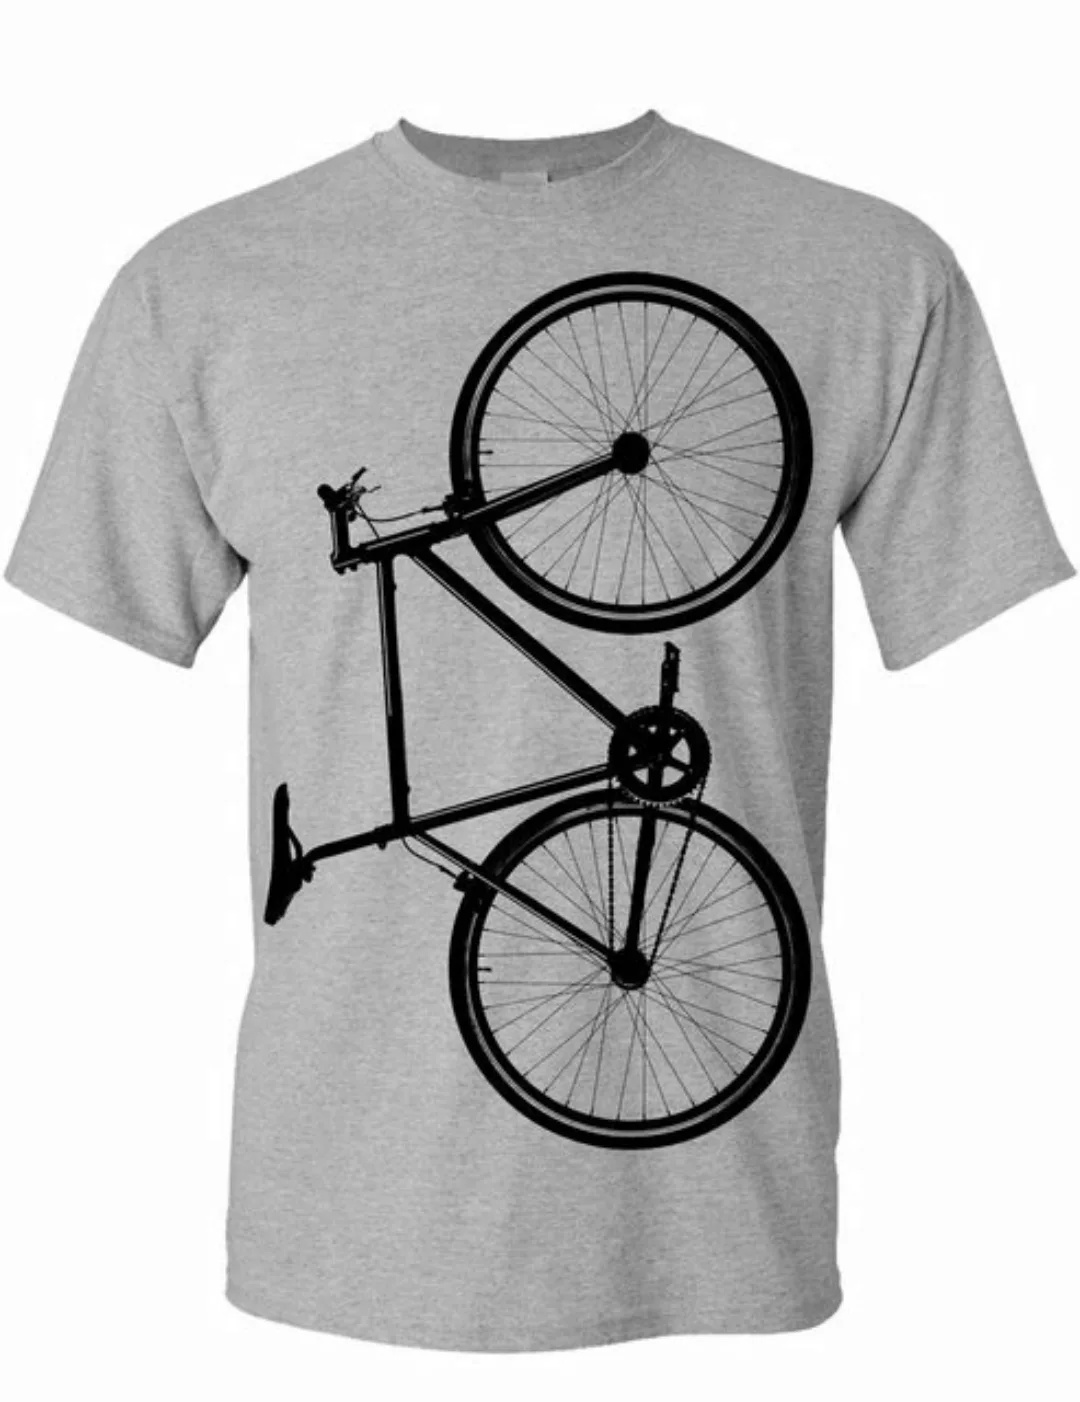 Baddery Print-Shirt Fahrrad T-Shirt: "Fixie Bike", hochwertiger Siebdruck, günstig online kaufen